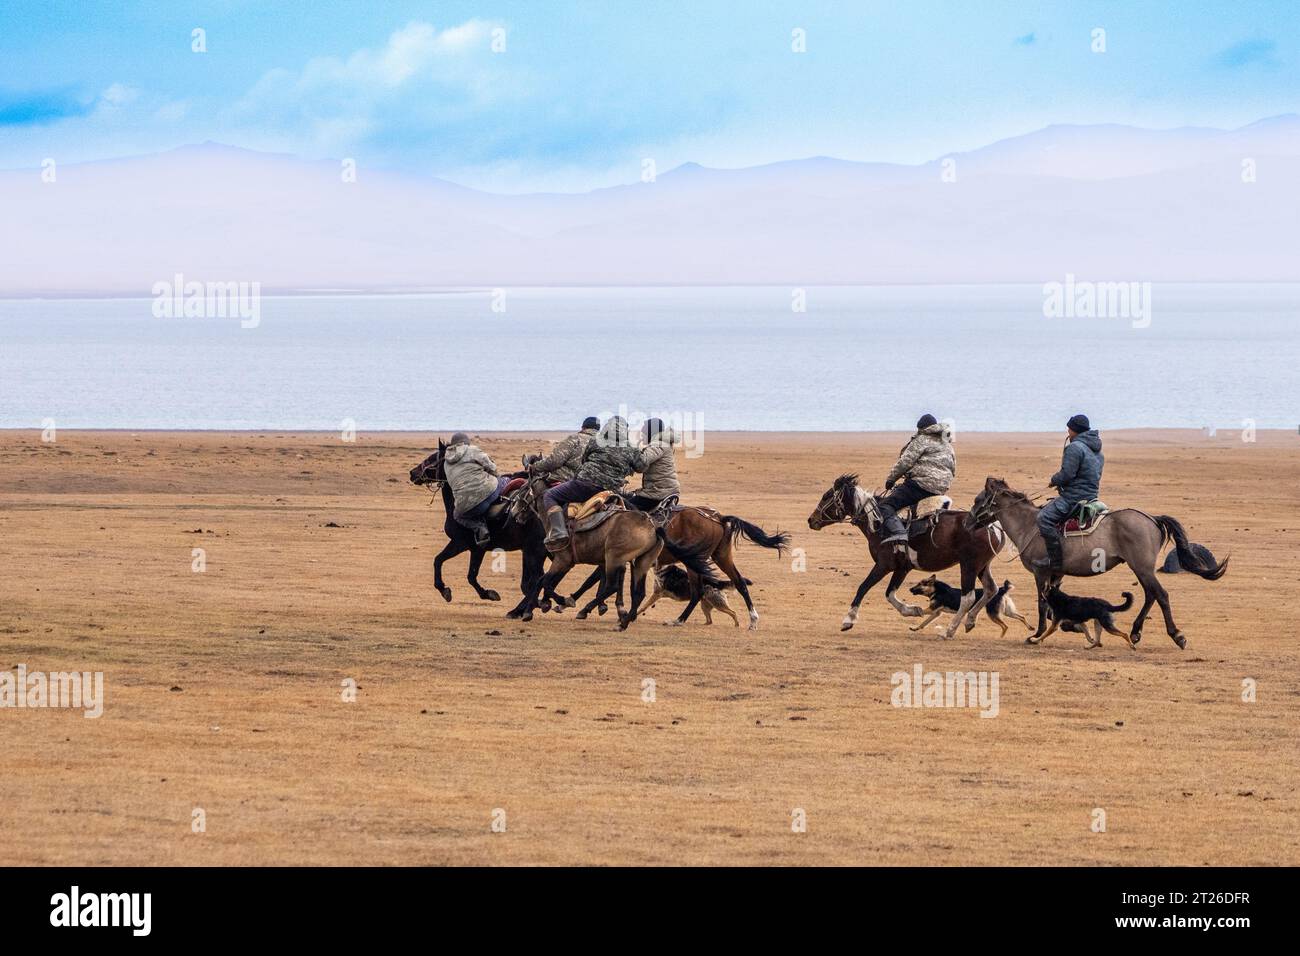 Kok-boru Kirgisistan-Buzkashi Ziegenziehen ist die traditionelle nationale Sportart, in der die Spieler auf den Pferden versuchen, eine Ziege oder ein Kalb zu platzieren Stockfoto